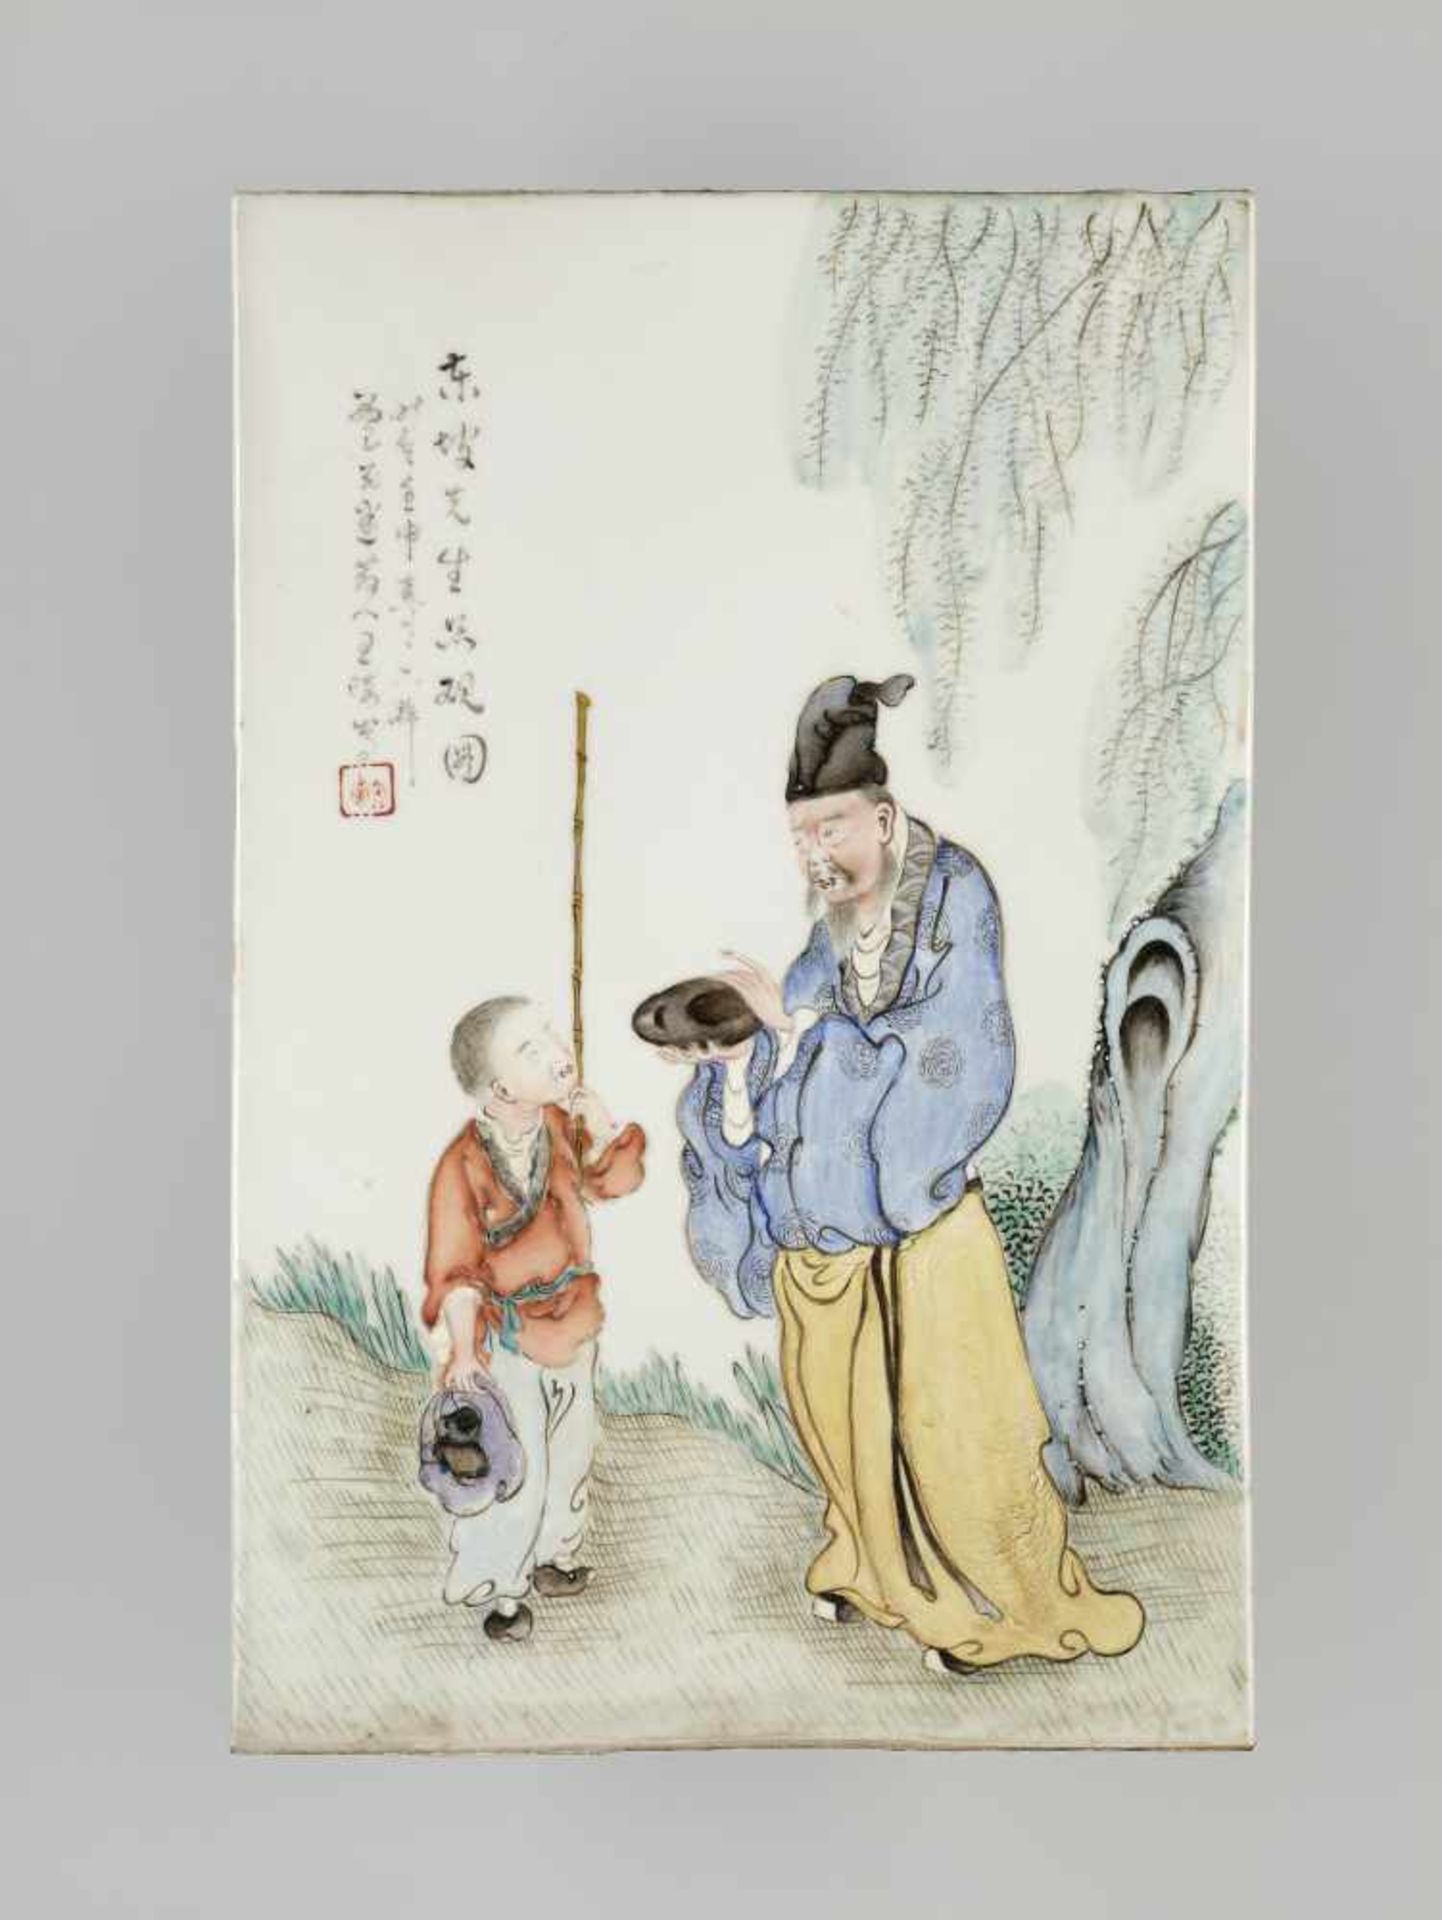 A PORCELAIN PLAQUE BY WANG QI, 1932China, signed Taomi sanren Wang Qi and dated 1932. Seal Tao Zhai.